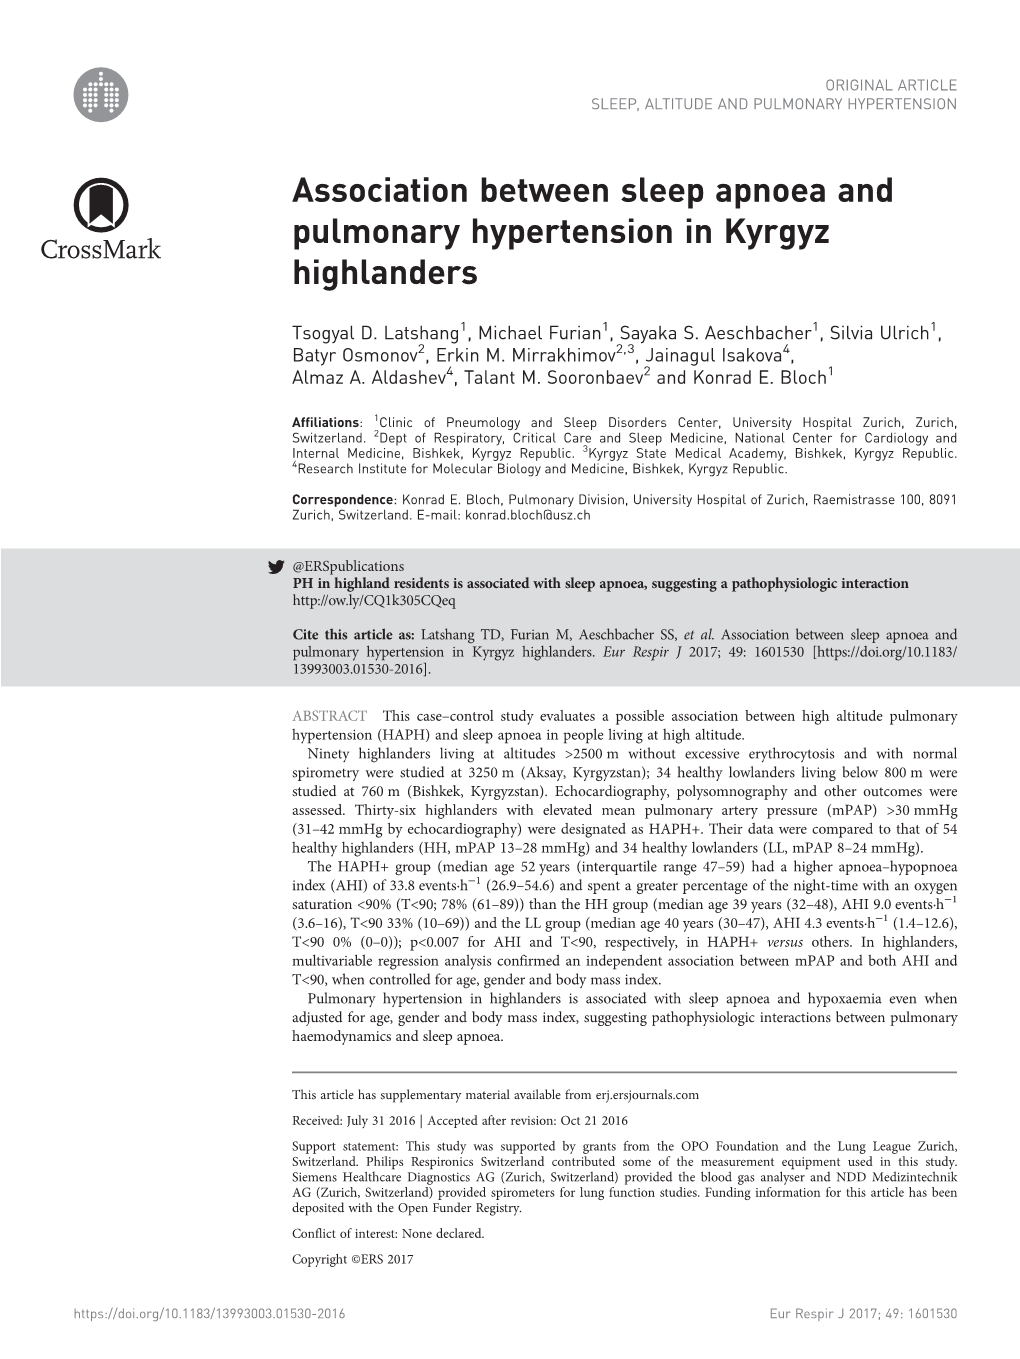 Association Between Sleep Apnoea and Pulmonary Hypertension in Kyrgyz Highlanders